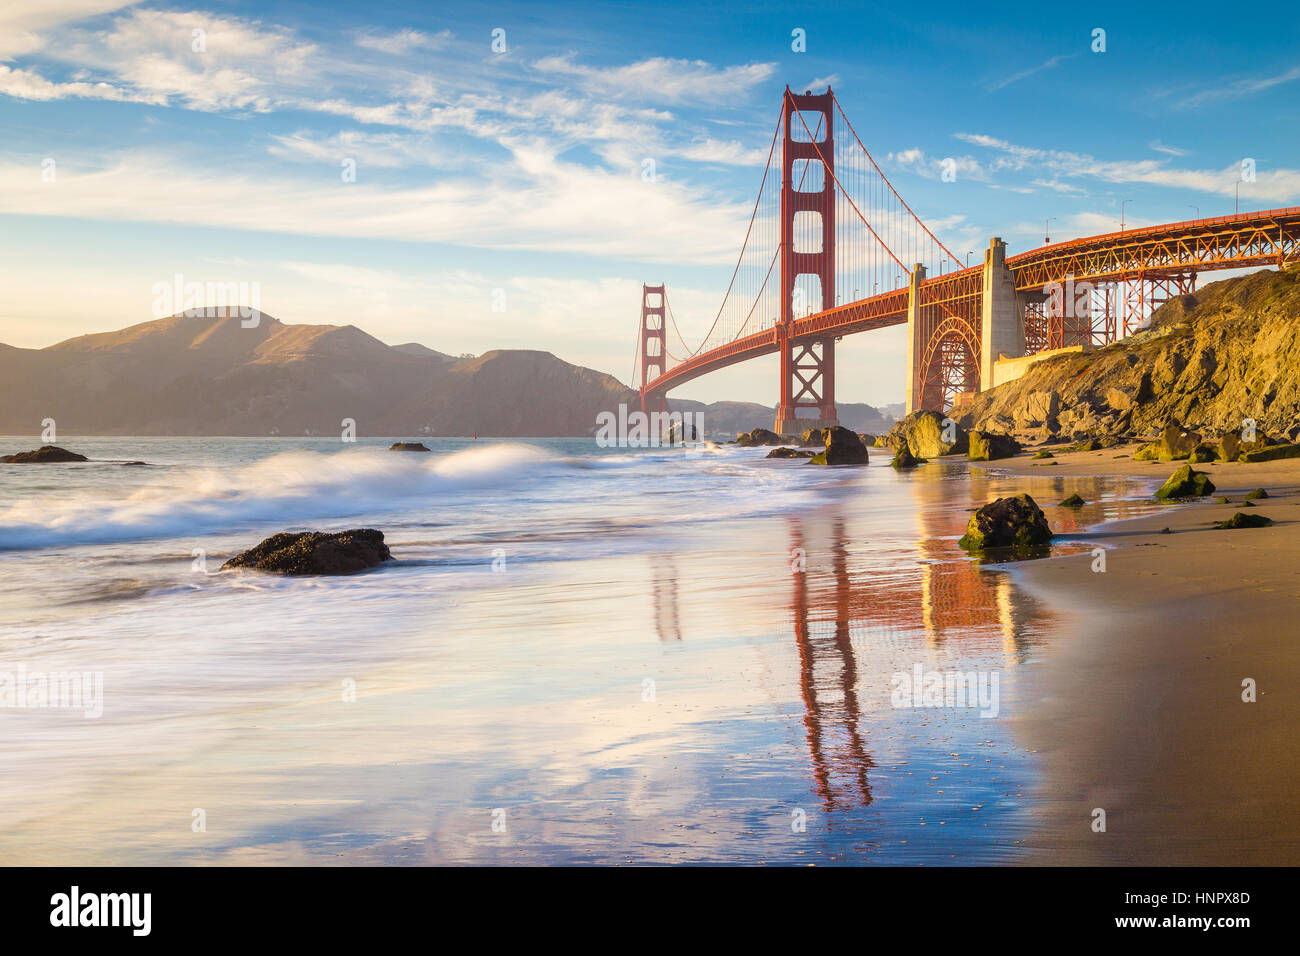 Klassische Panorama der berühmten Golden Gate Bridge gesehen vom malerischen Baker Beach im schönen goldenen Abendlicht bei Sonnenuntergang, San Francisco Bay, USA Stockfoto